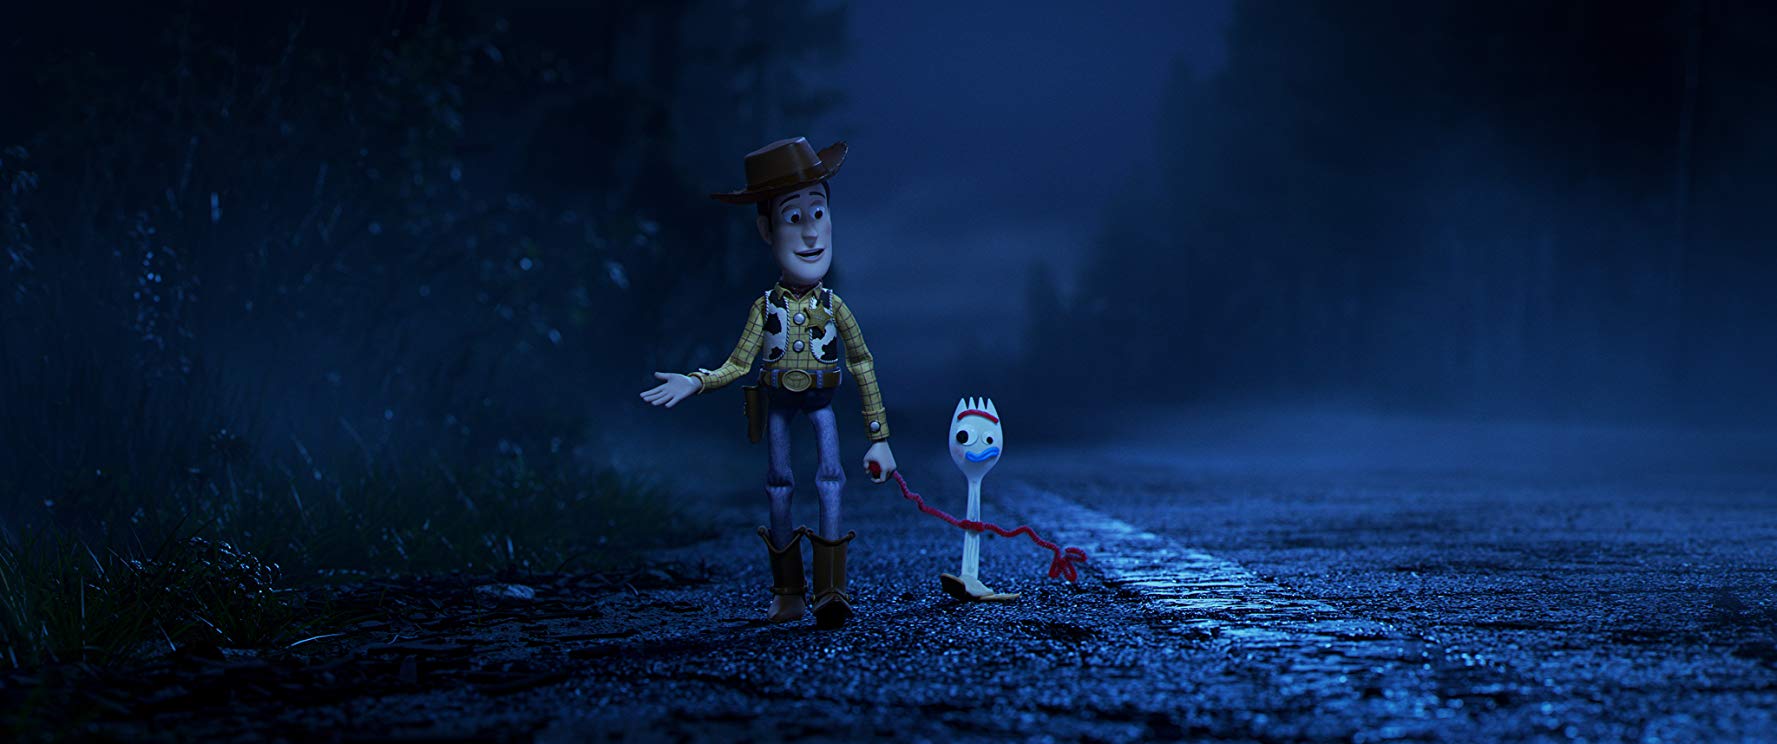 Bajkowe Lato (bilet 10 zł): Toy Story 4